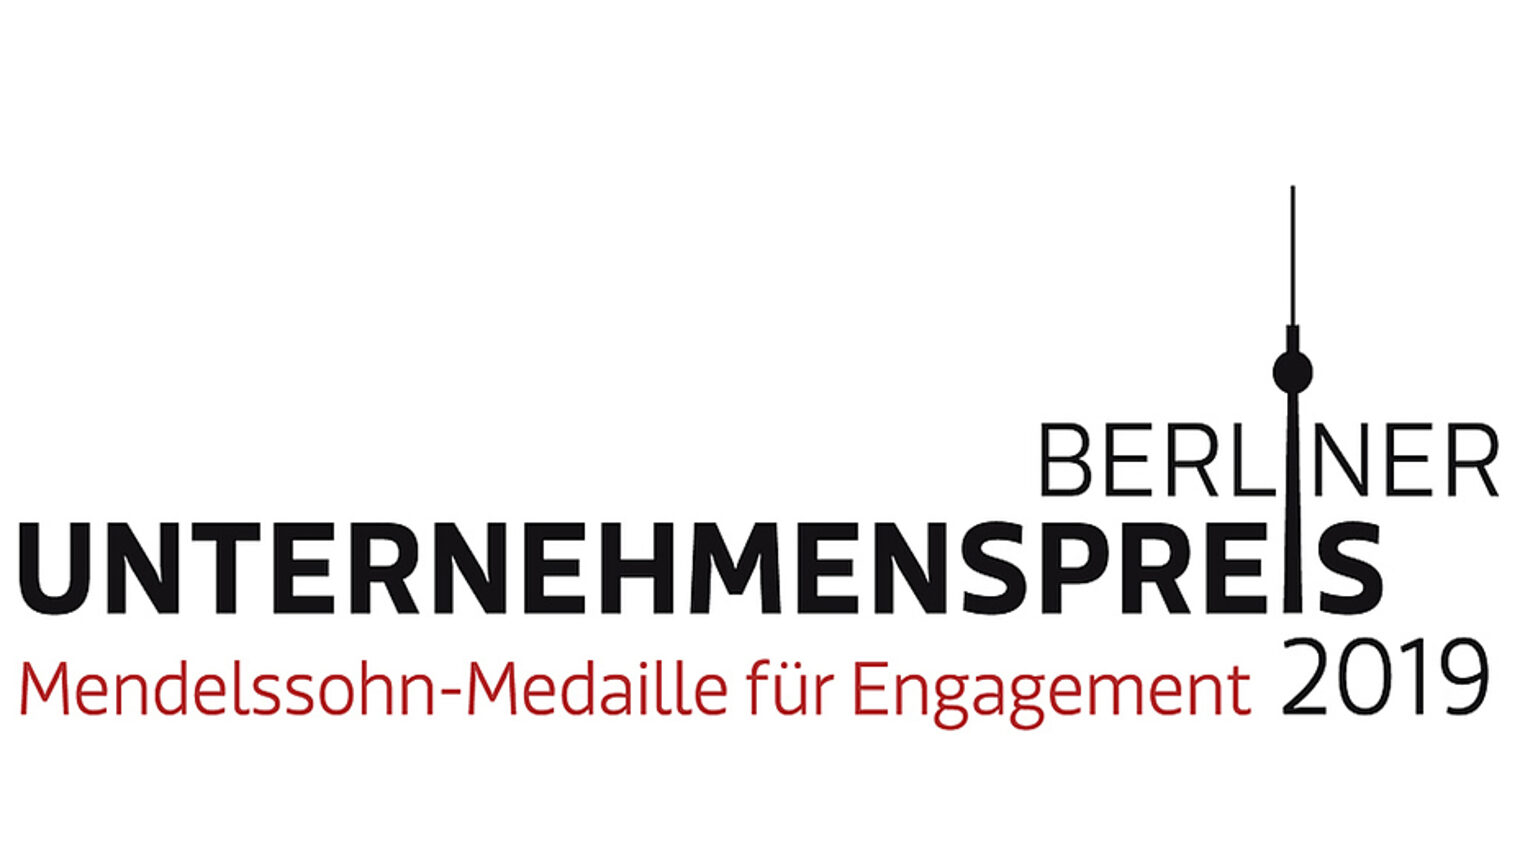 Wettbewerb, Unternehmenspreis Berlin, Engagement